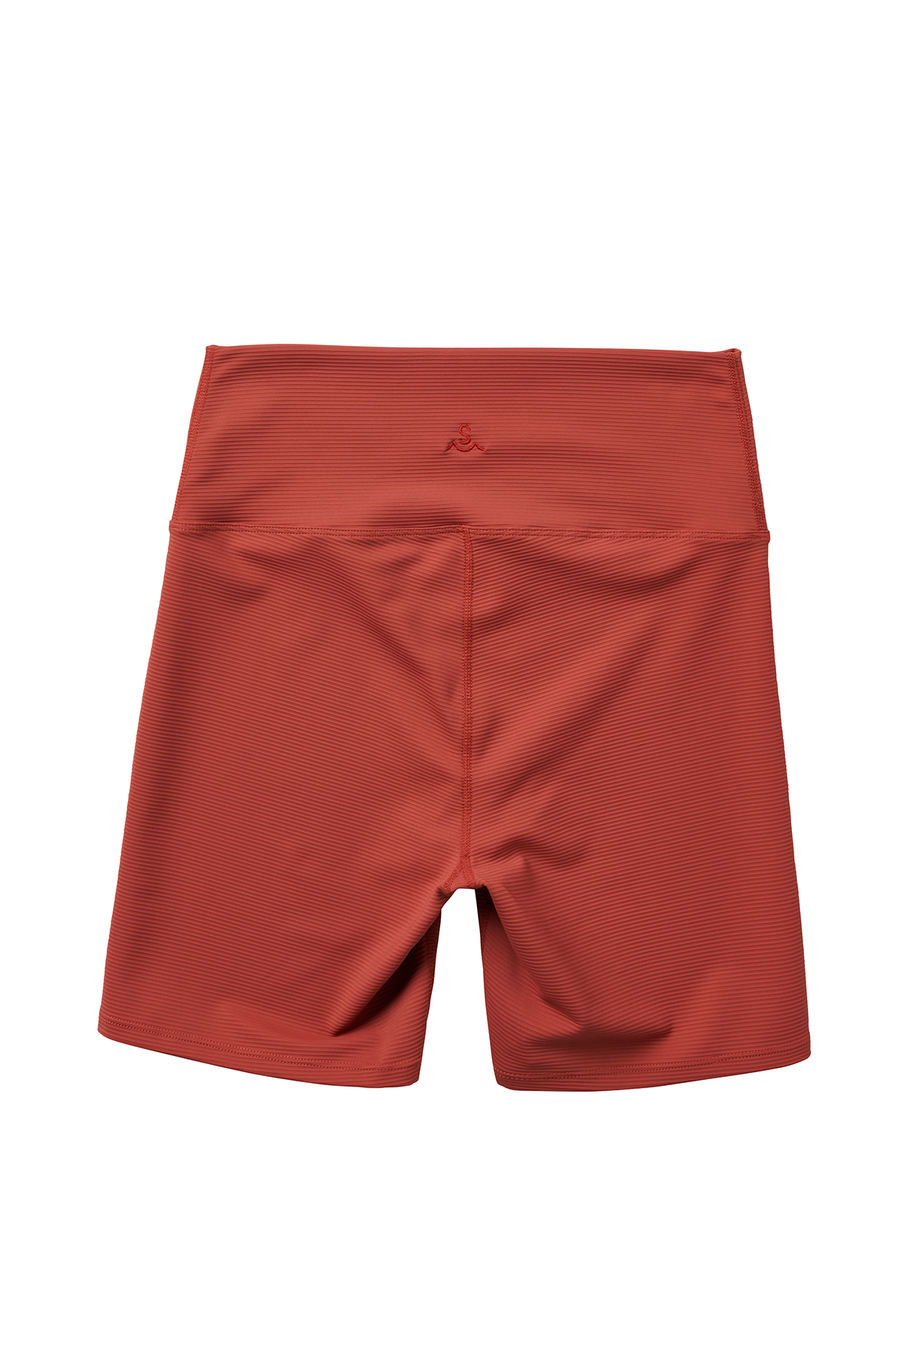 Women's Bike Shorts / Ribbed Fabric / Sunbeam